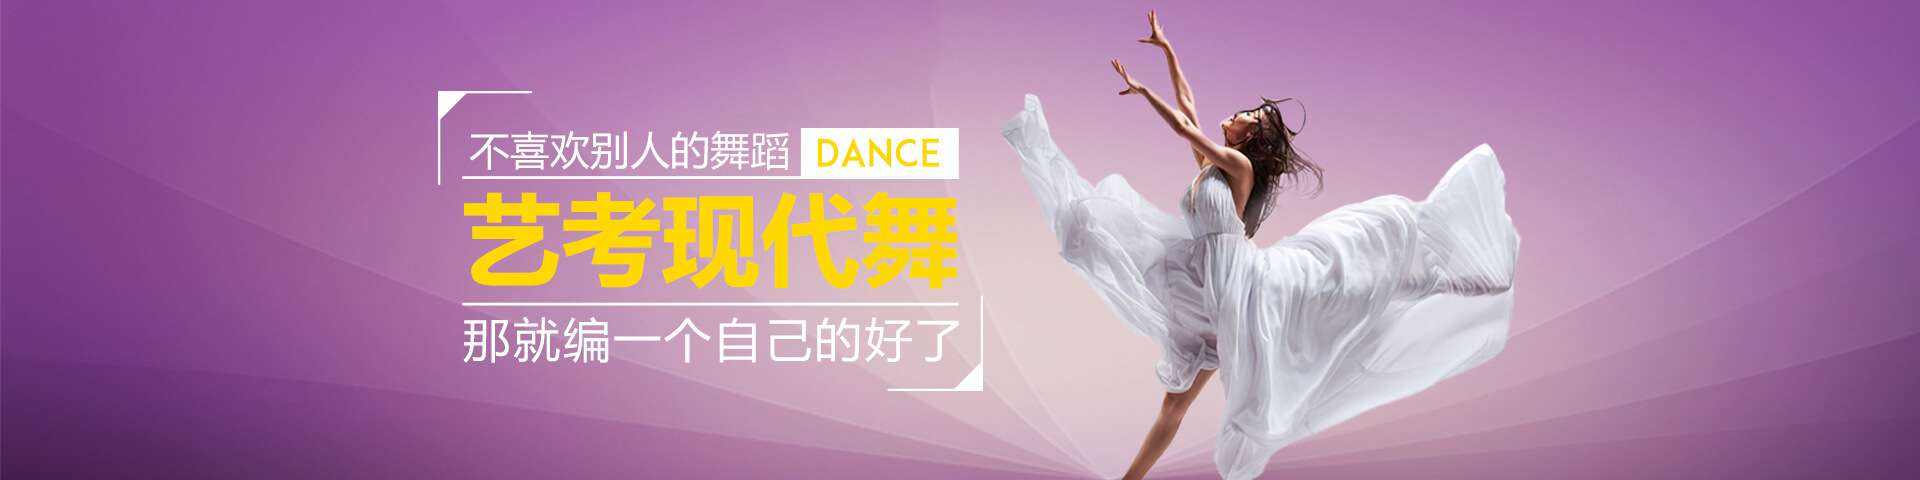 北京街舞高级技术培训班